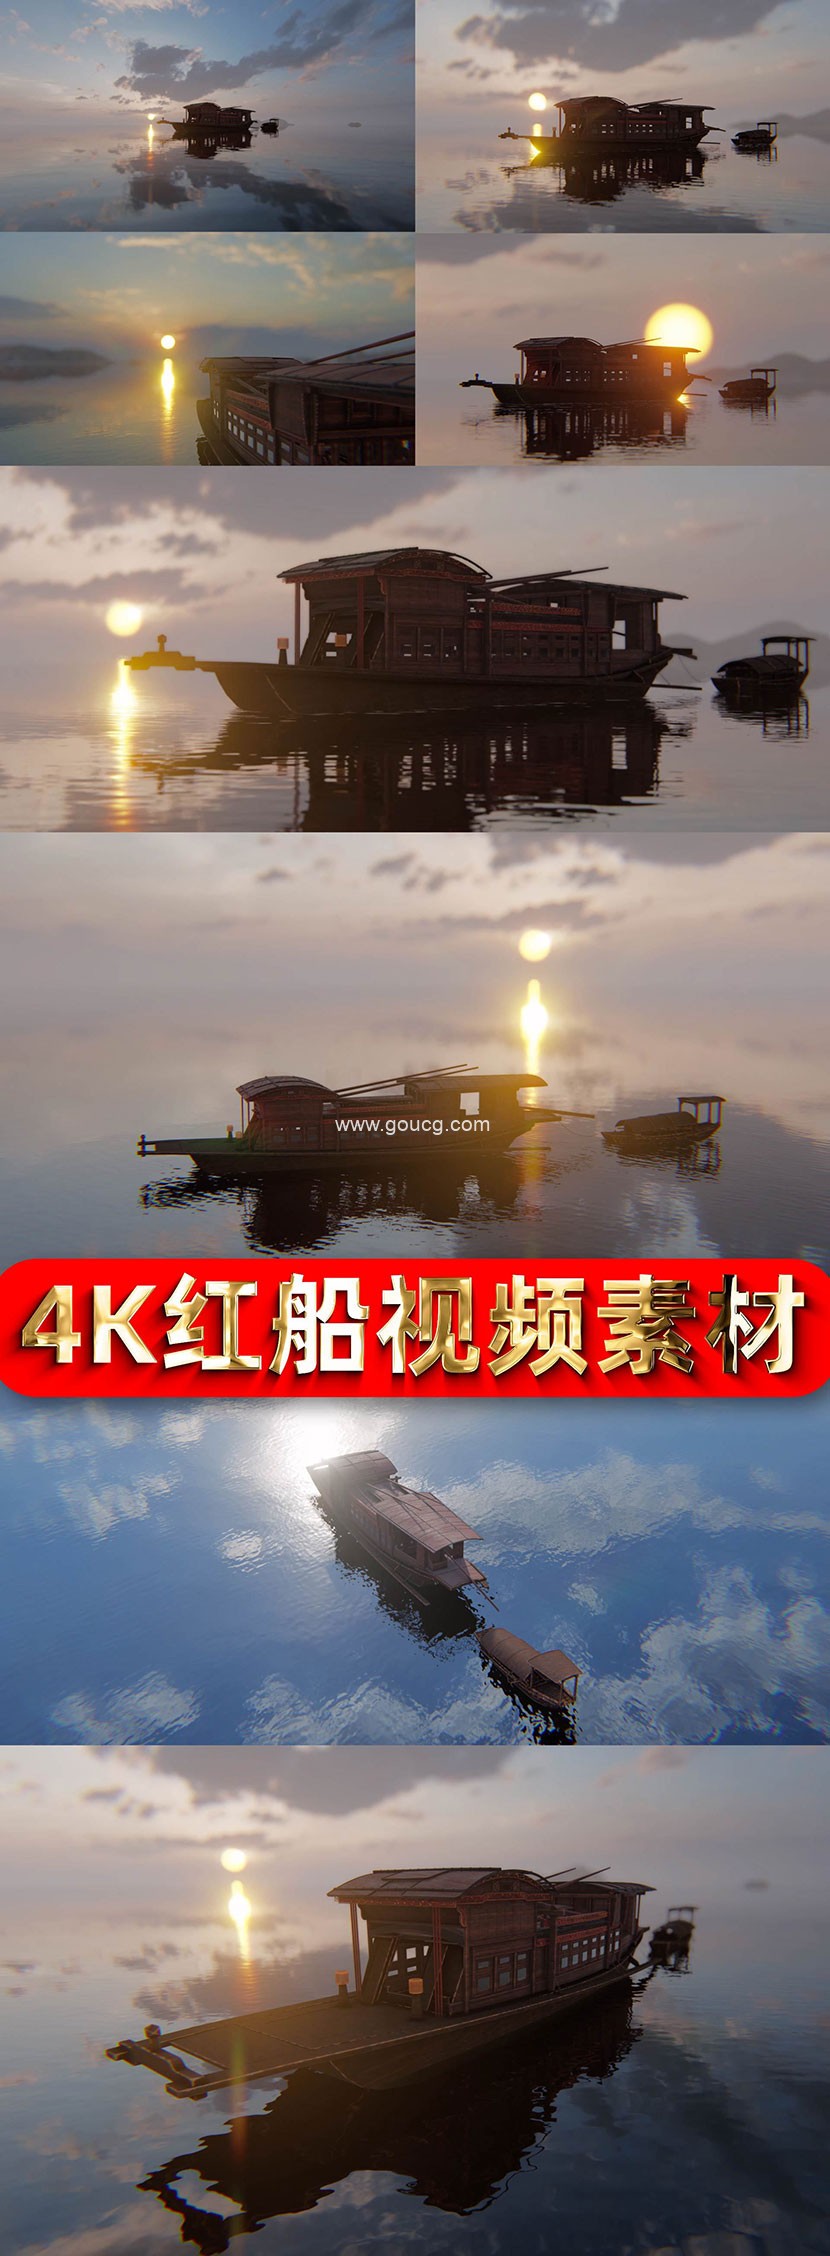 南湖红船4K嘉兴南湖红船朝霞下的红船红船三维动态视频